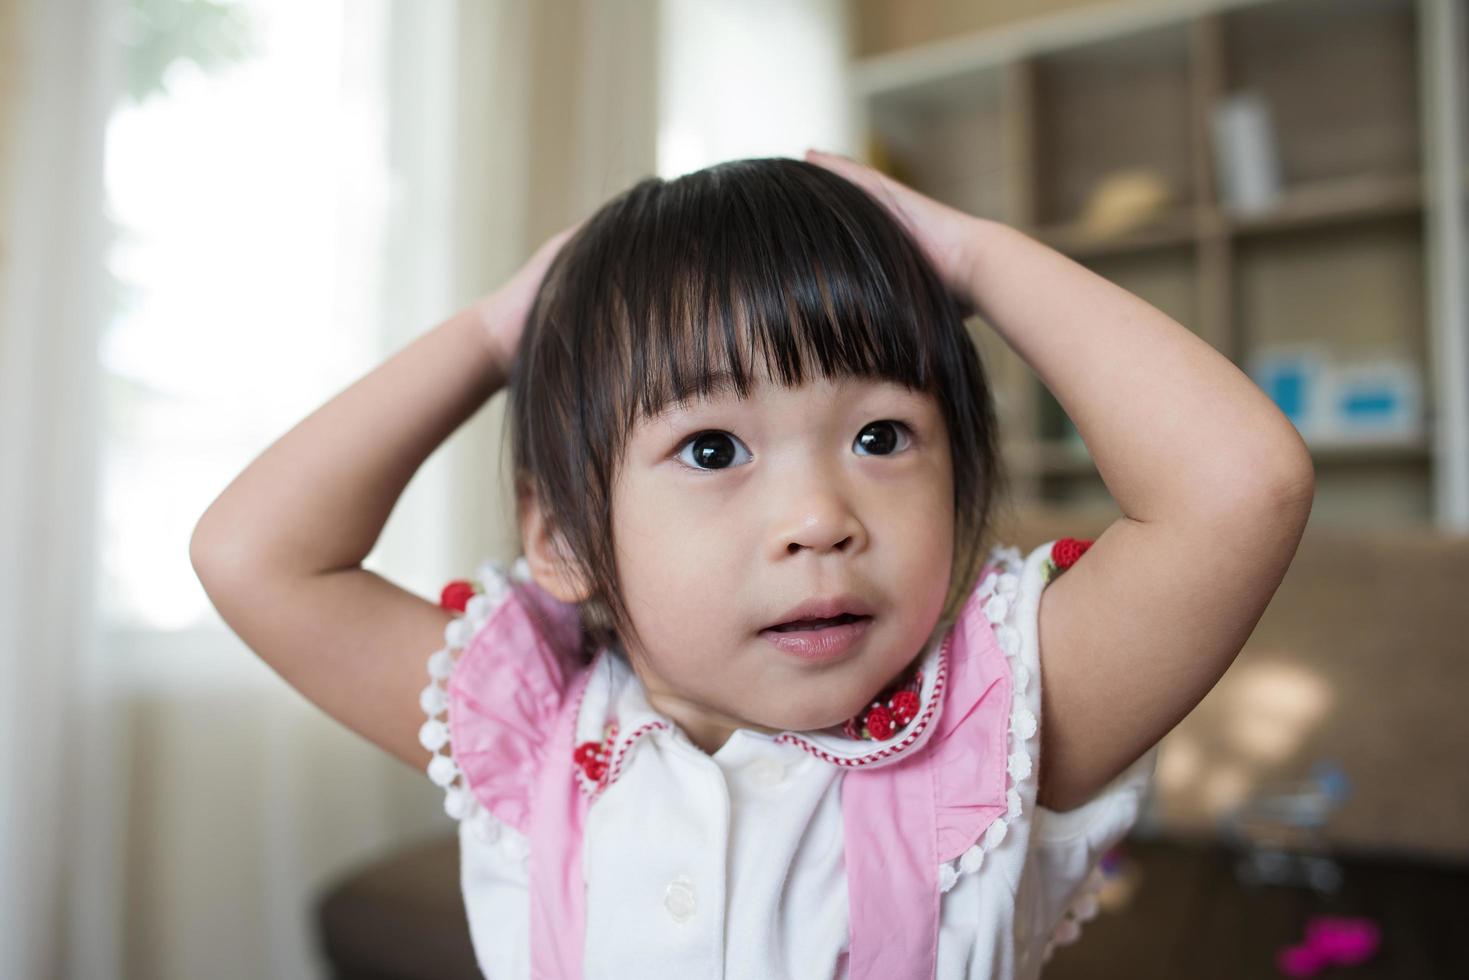 porträtt av en liten asiatisk tjej som leker i sitt hem foto